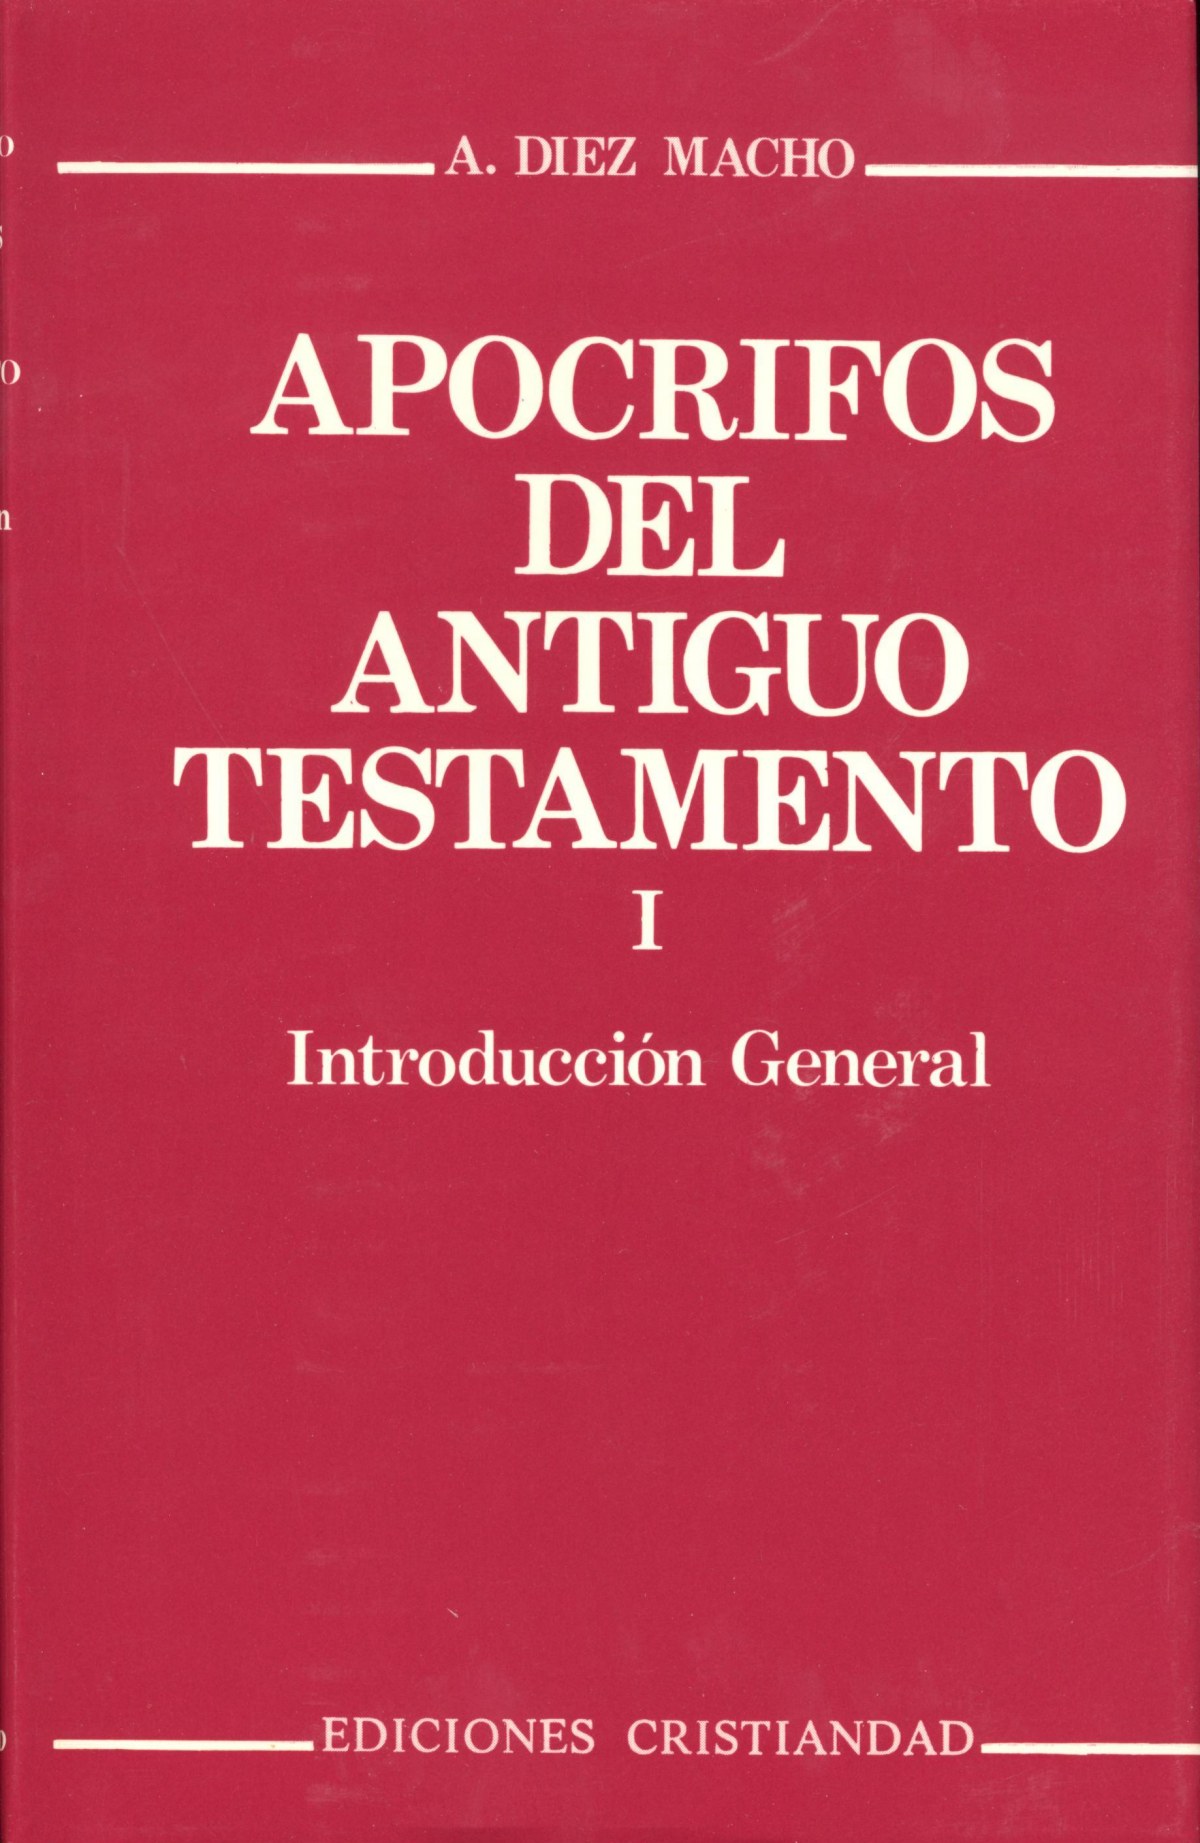 Apócrifos del Antiguo Testamento.Volumen I - Díaz Macho, Alejandro